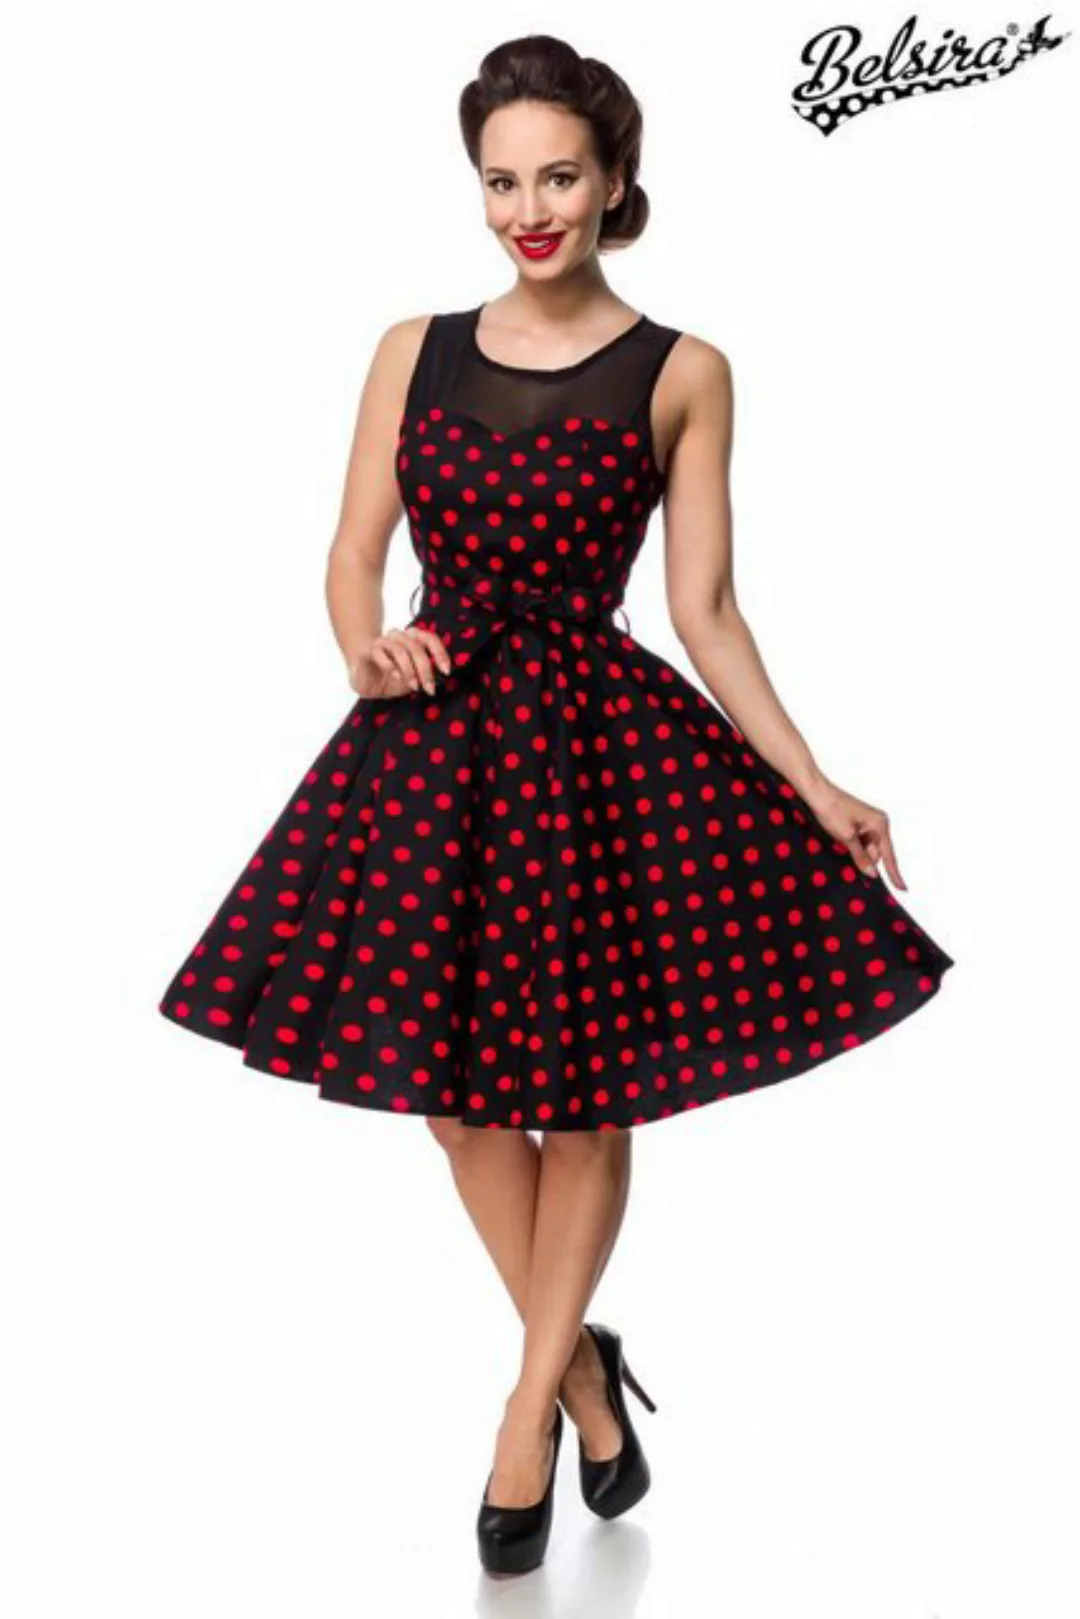 BELSIRA Trachtenkleid Belsira - Kleid mit Dots - (3XL,4XL) günstig online kaufen